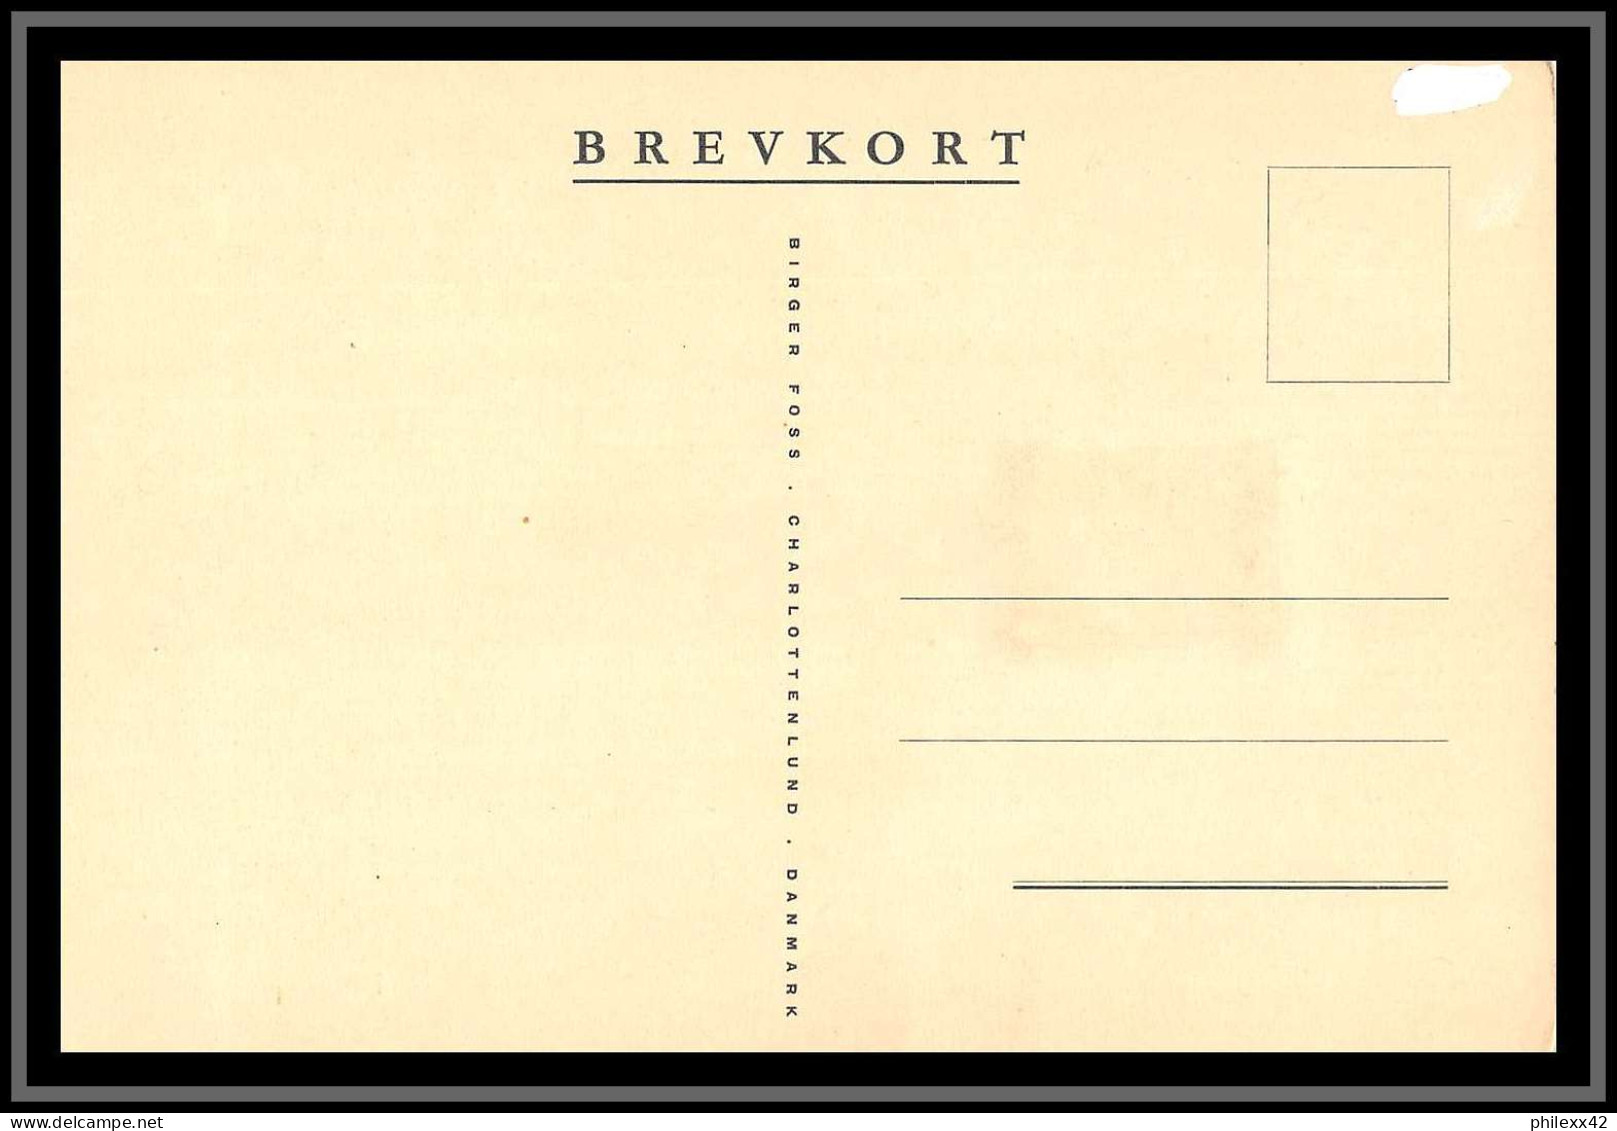 49132 N°344 Institut De Sauvetage Maritime 1952 Danmark Denmark Carte Maximum (card) - Maximum Cards & Covers